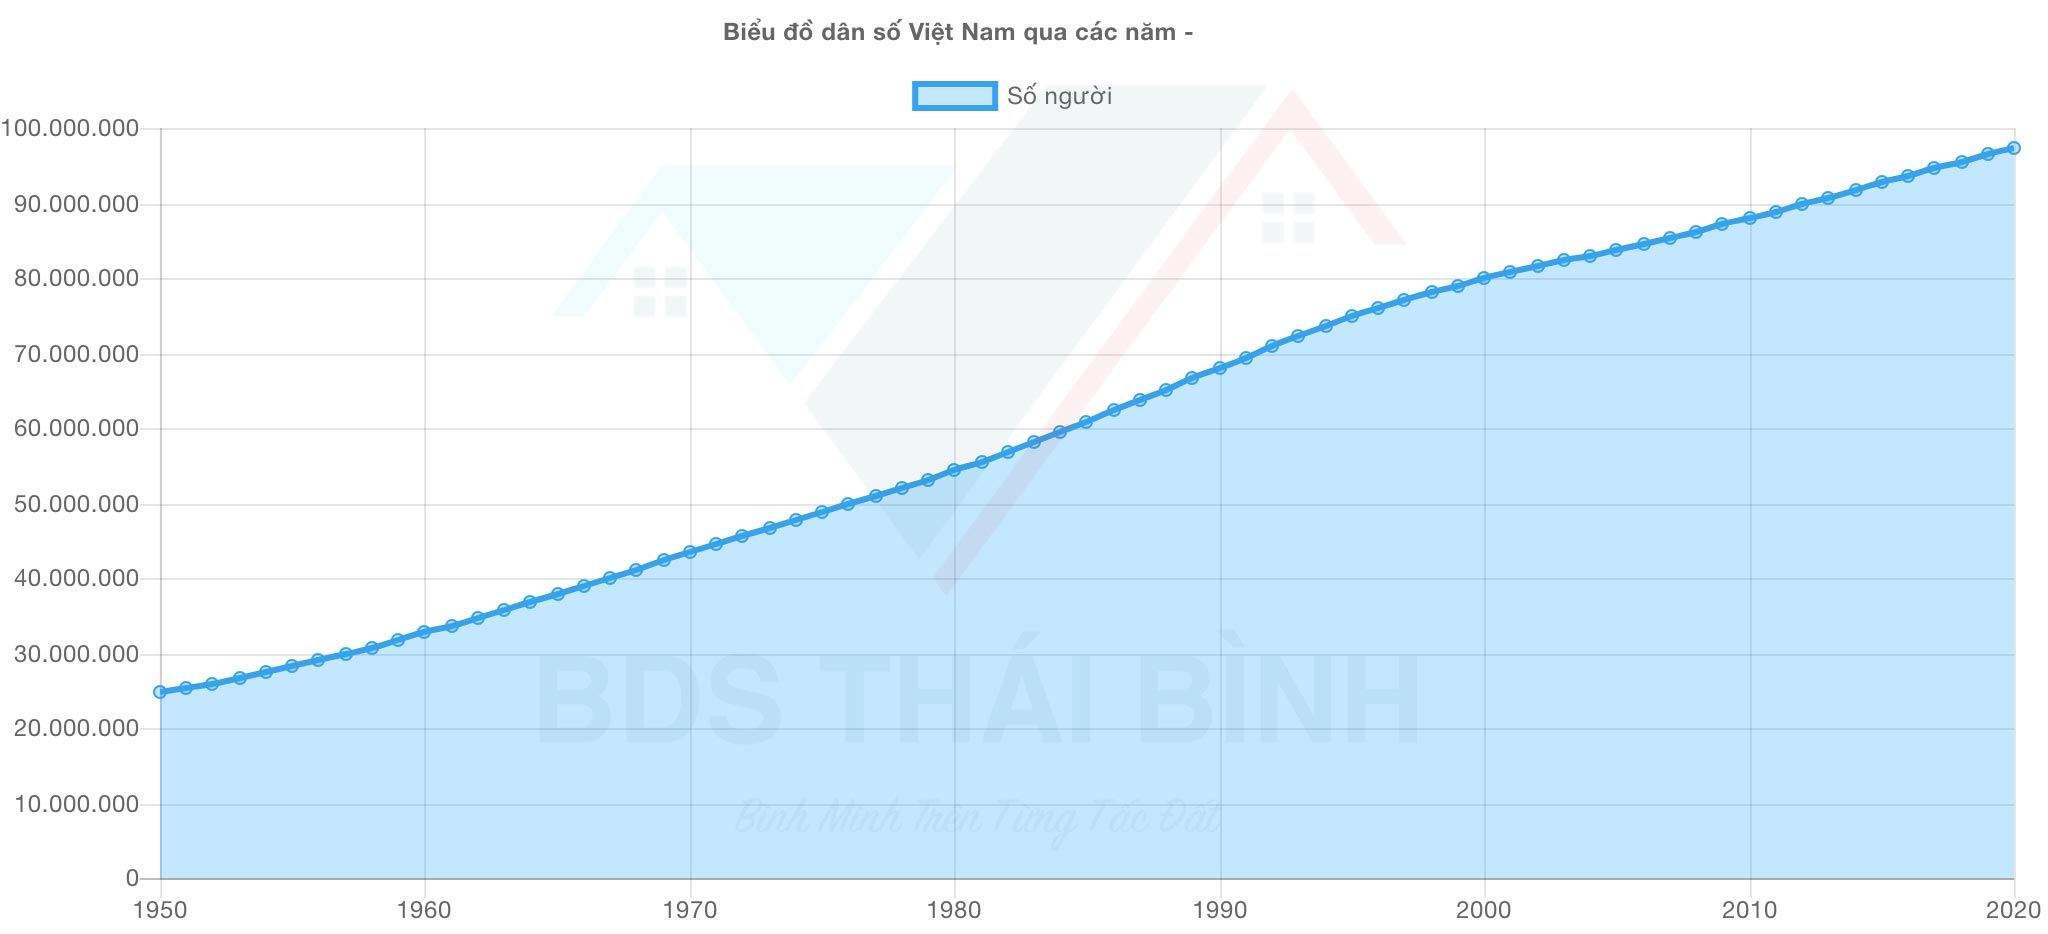 Dân số Việt Nam gia tăng tự nhiên khoảng 1 triệu dân mỗi năm trong khi quỹ đất nền sổ đỏ ngày càng giảm